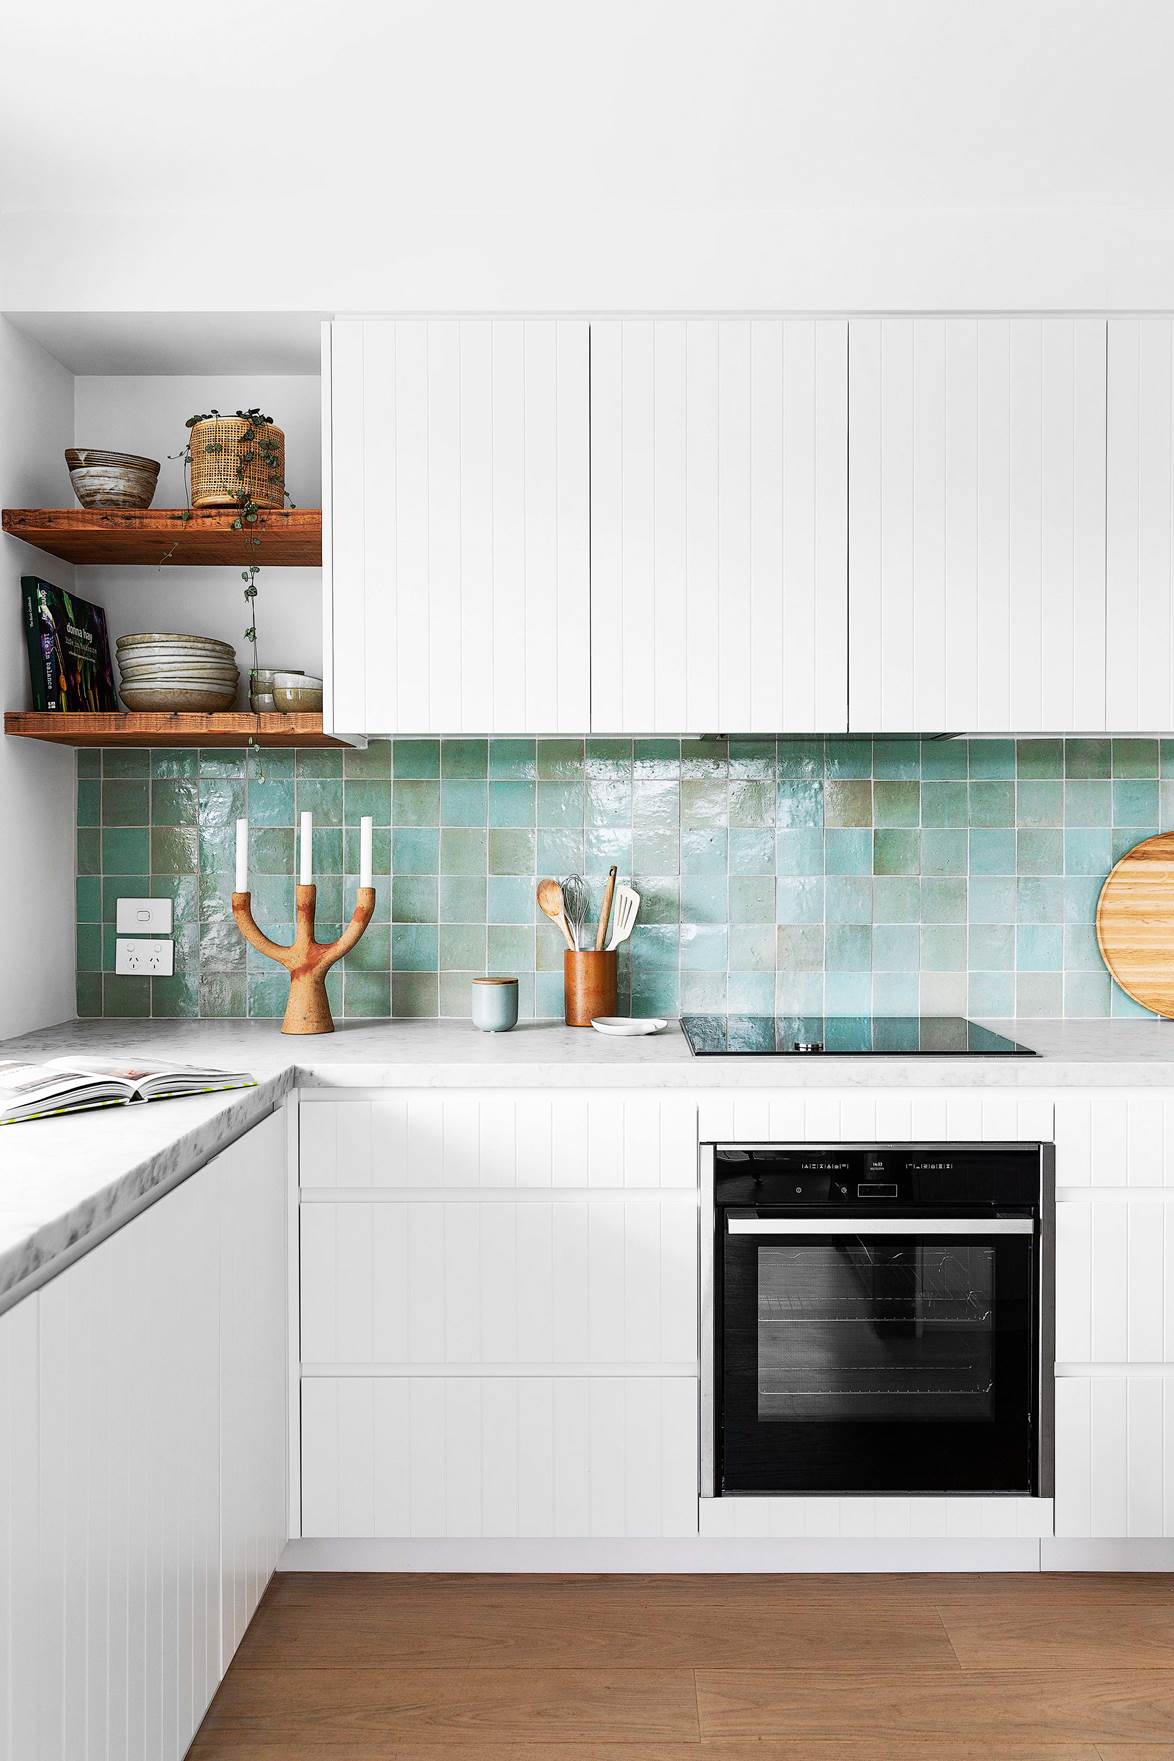 12 ý tưởng để bạn tô điểm căn bếp gia đình bằng những mảng màu xanh lá tươi mát - Ảnh 3.